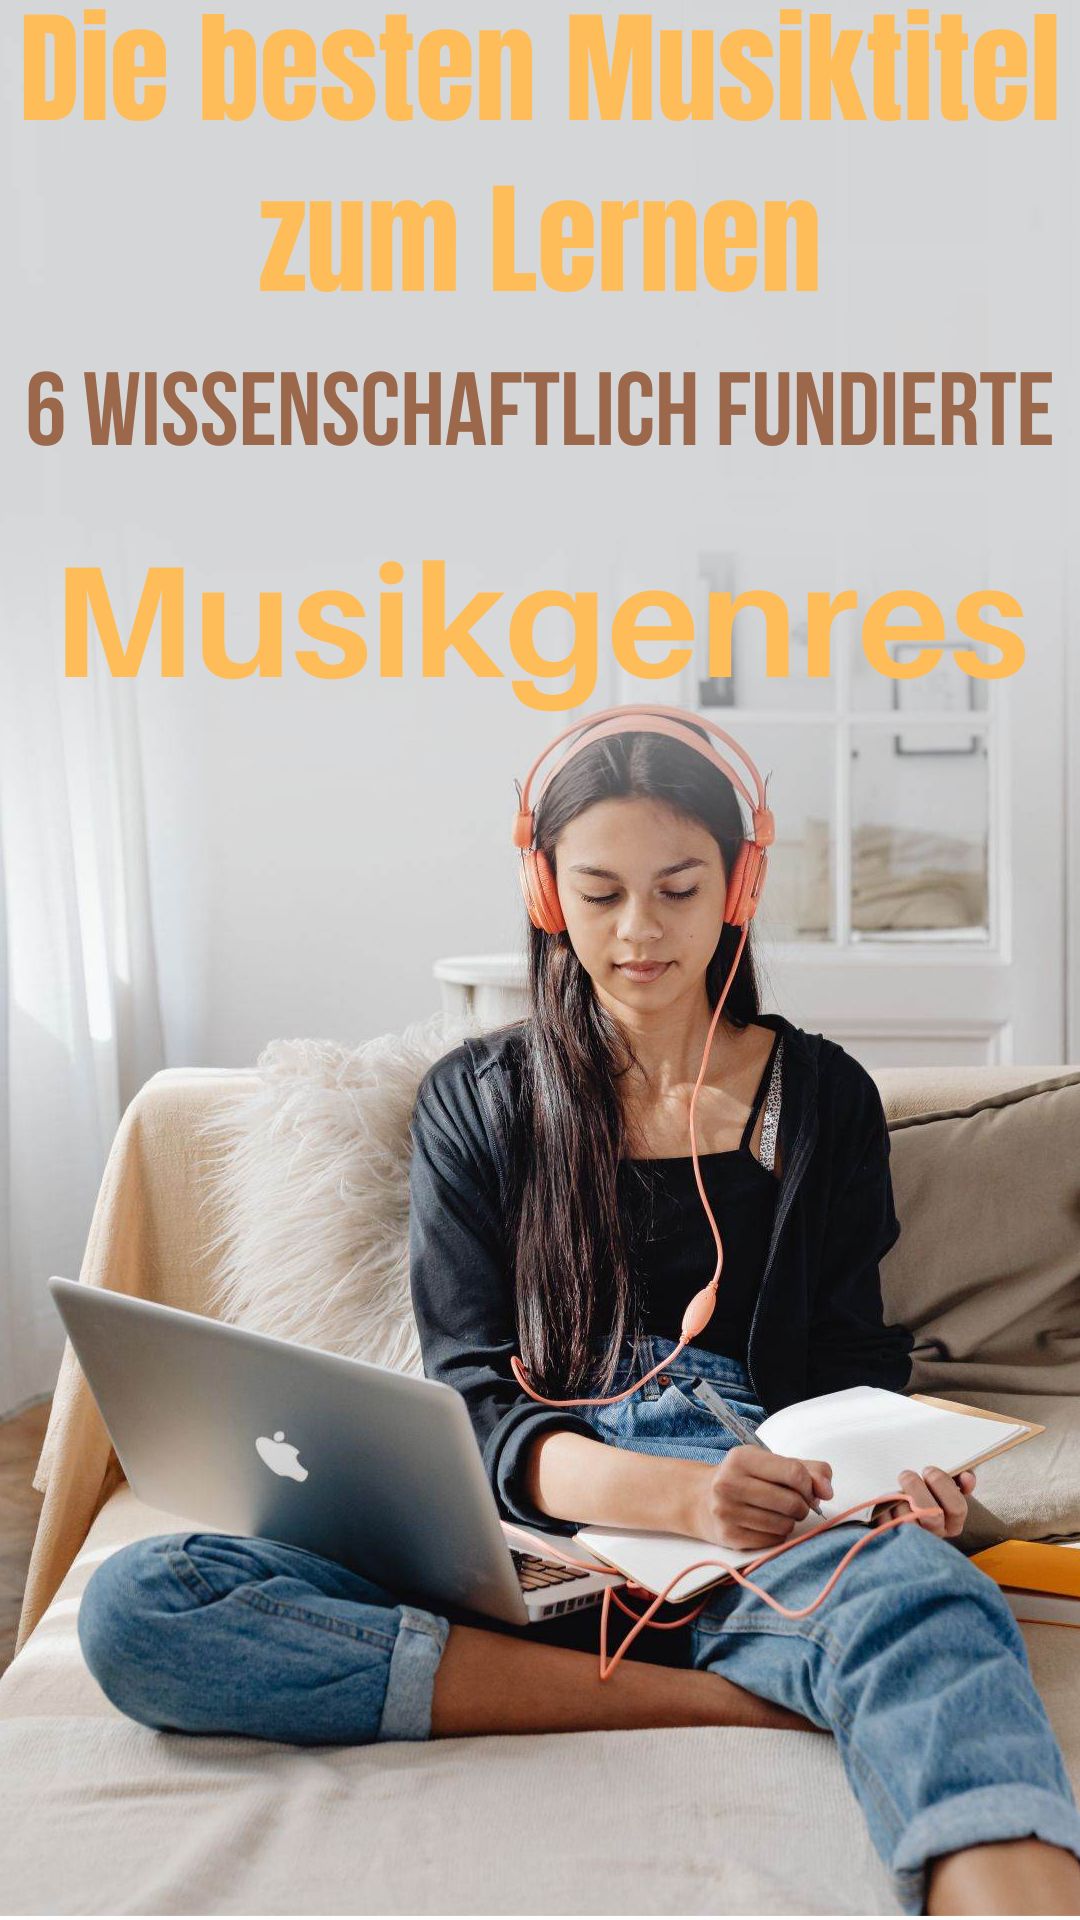 Die-besten-Musiktitel-zum-Lernen-6-wissenschaftlich-fundierte-Musikgenres